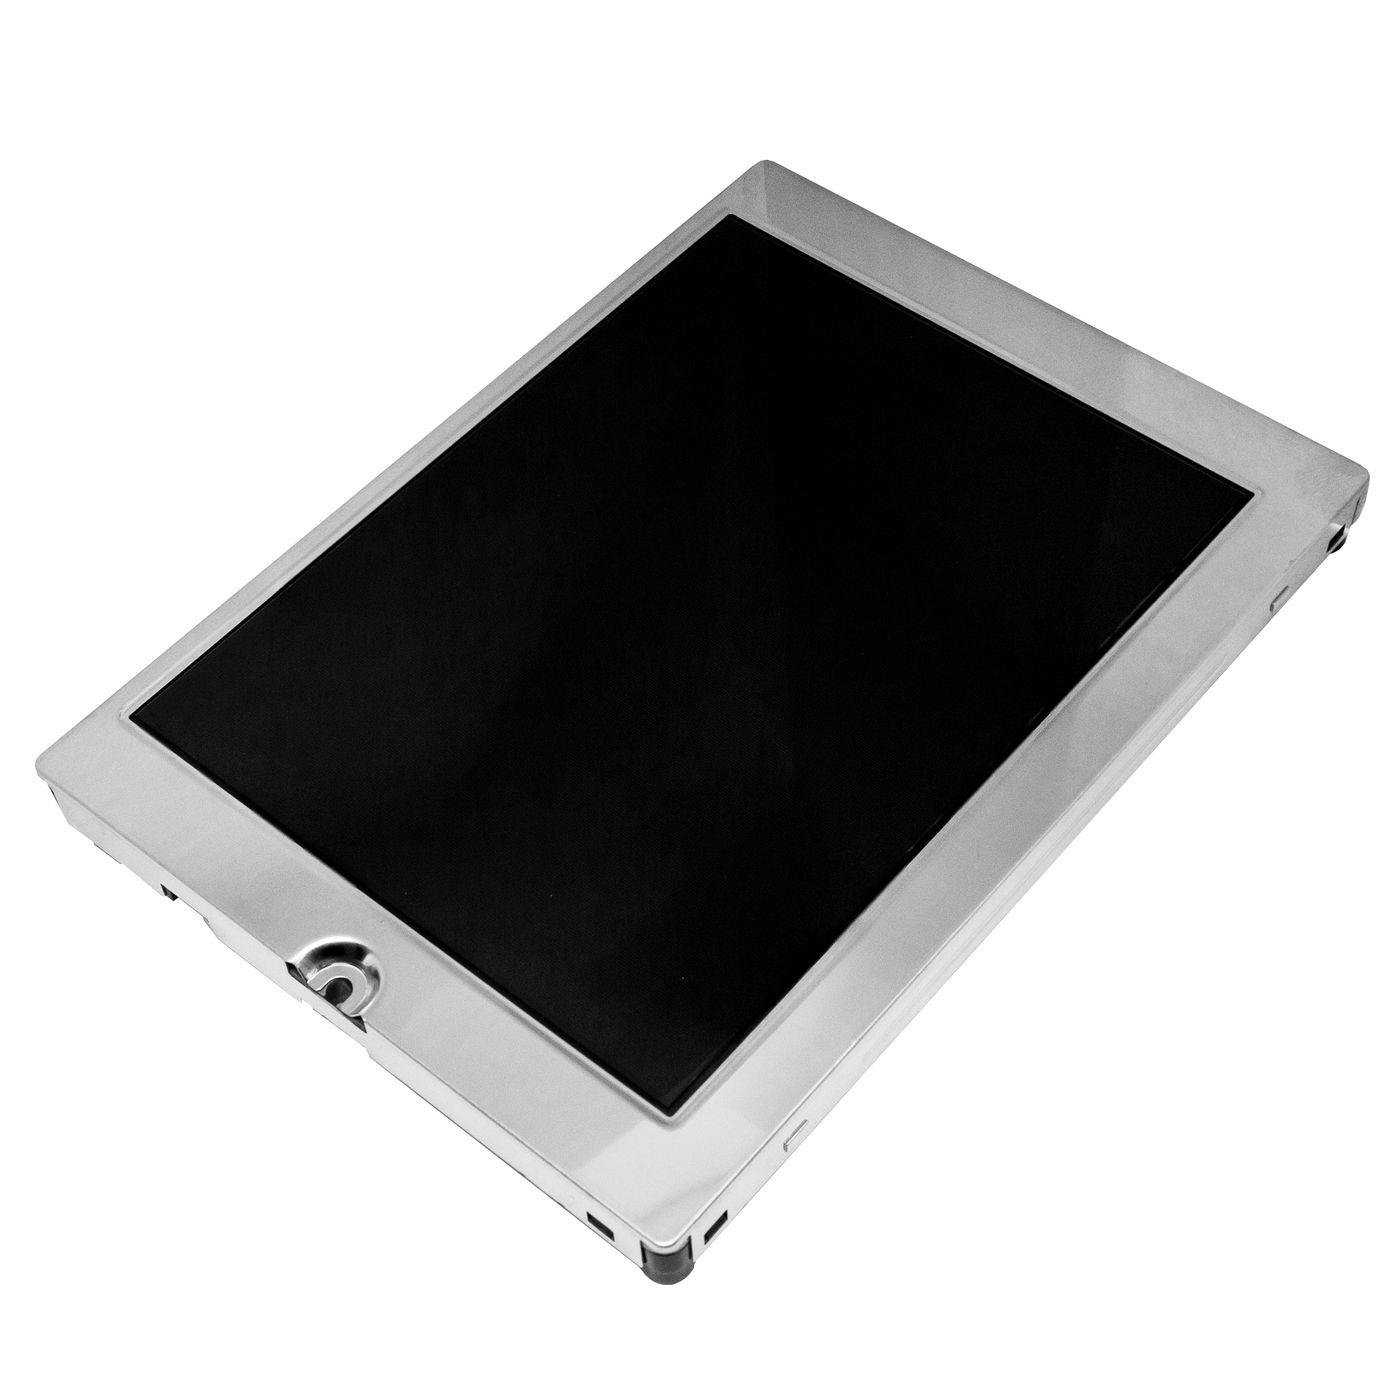 LCD Display Kyocera TCG057Q-V3 TCG057QV1AC 144x104mm